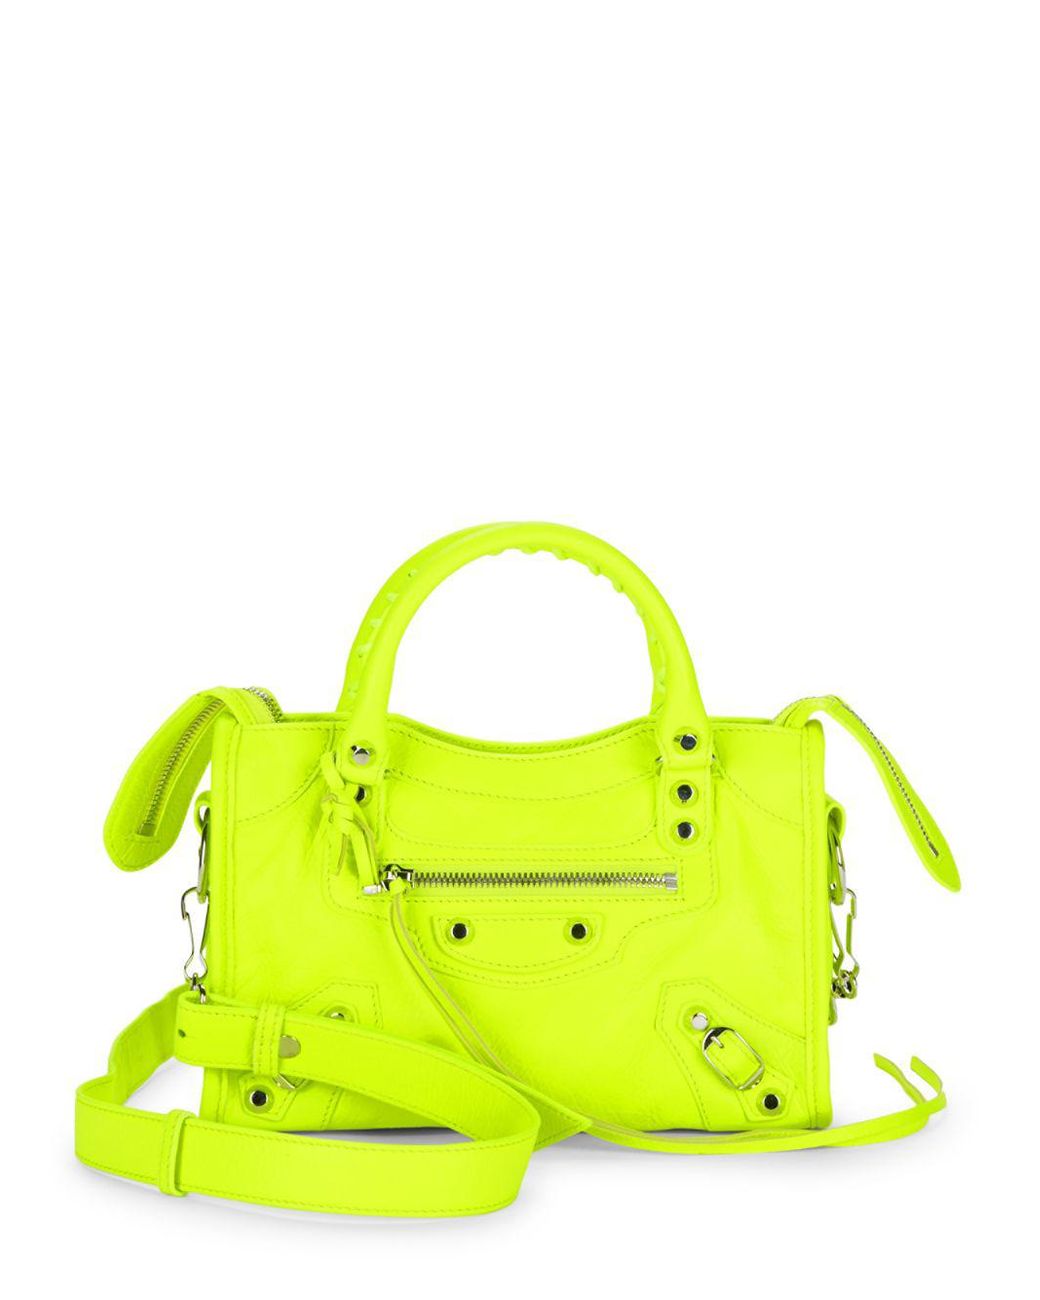 Balenciaga Neon Leather Bag in Neon Green (Yellow) | Lyst